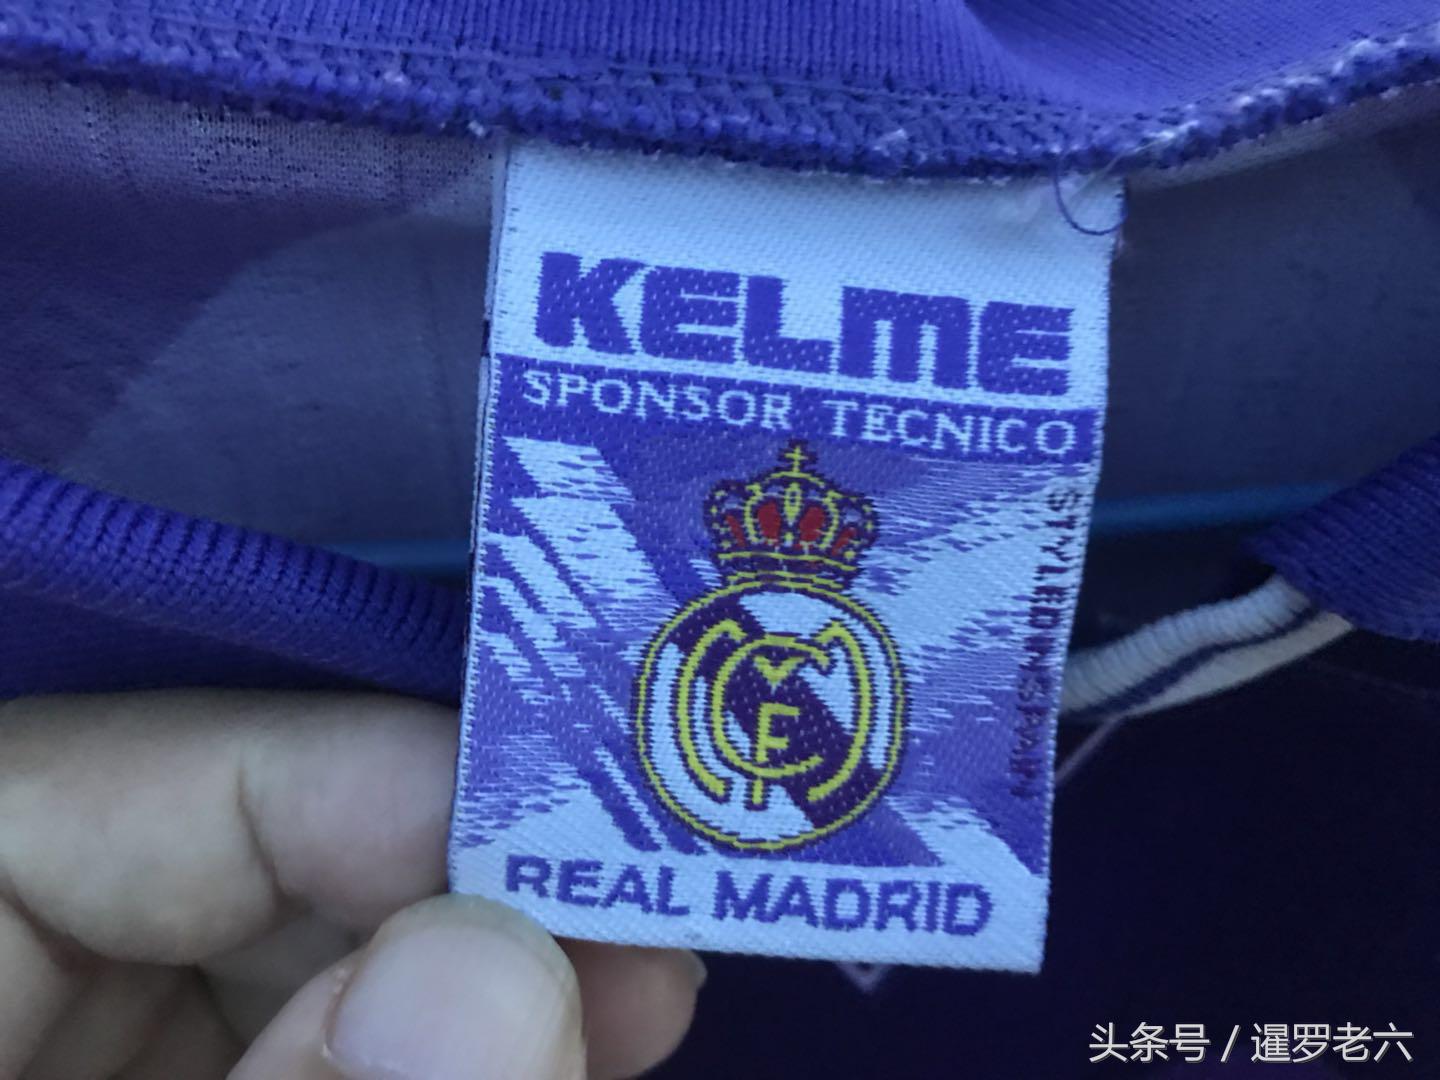 卡尔美赞助过的西甲球队 卡尔美还赞助过“皇家马德里”(3)